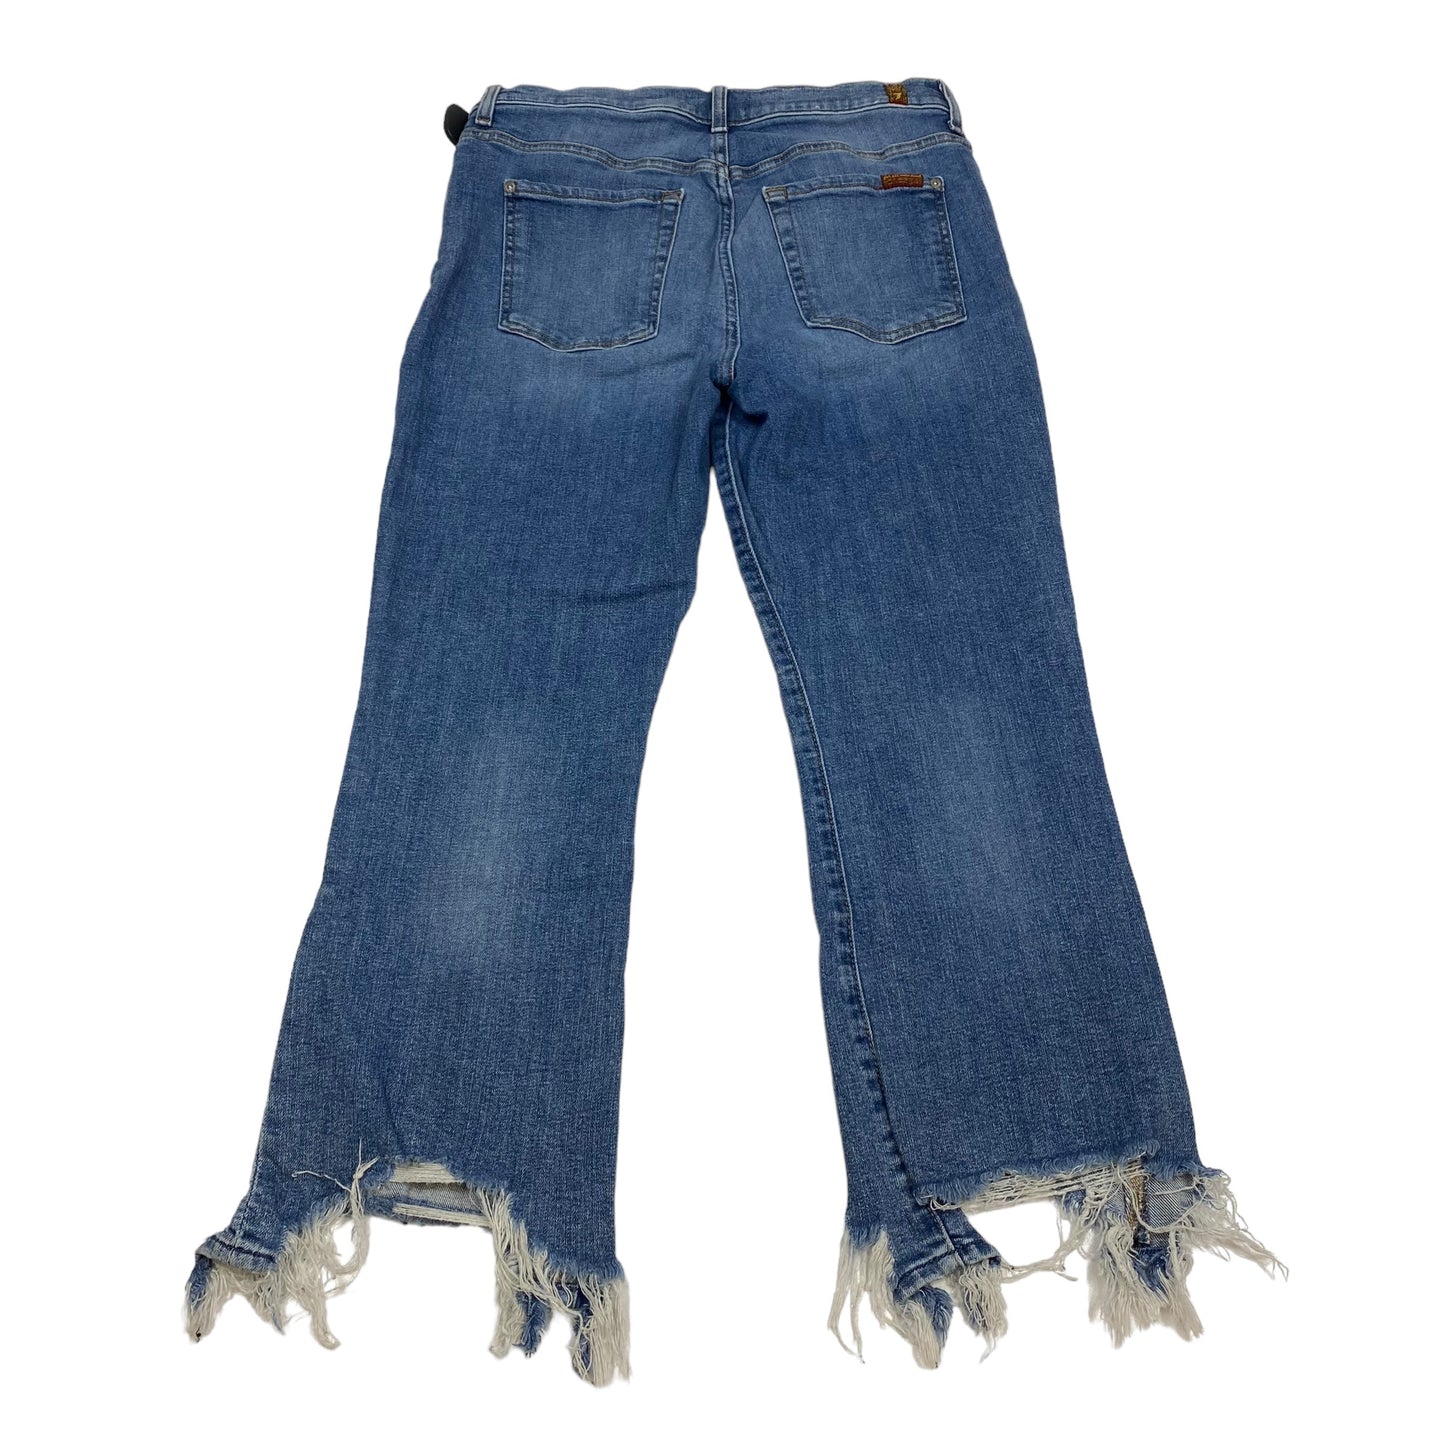 Blue Denim Jeans Designer 7 For All Mankind, Size 12